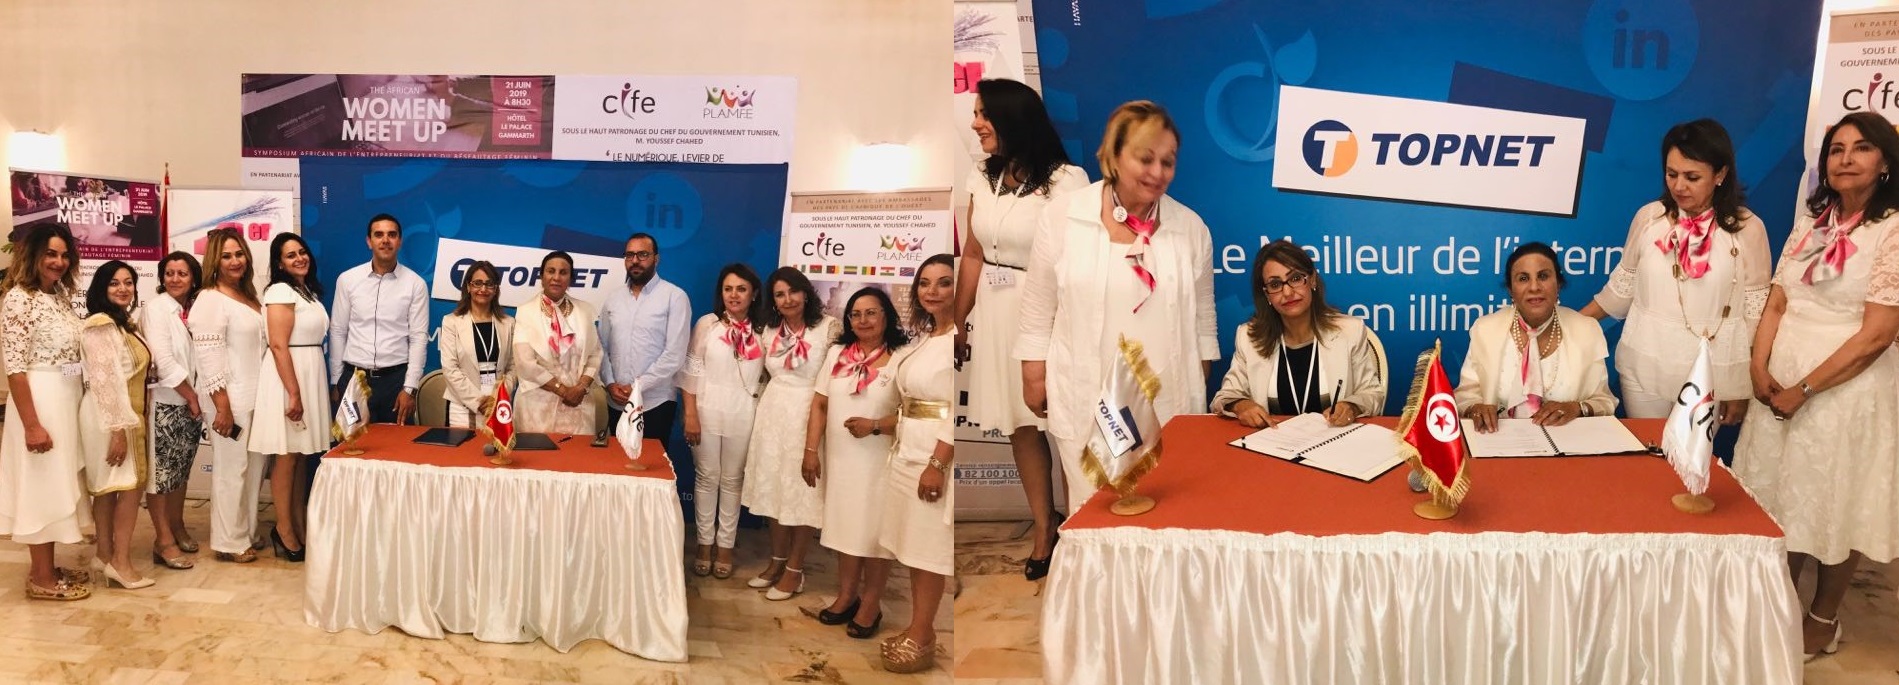 TOPNET et le Conseil International des Femmes Entrepreneures à Tunis signent un partenariat technologique